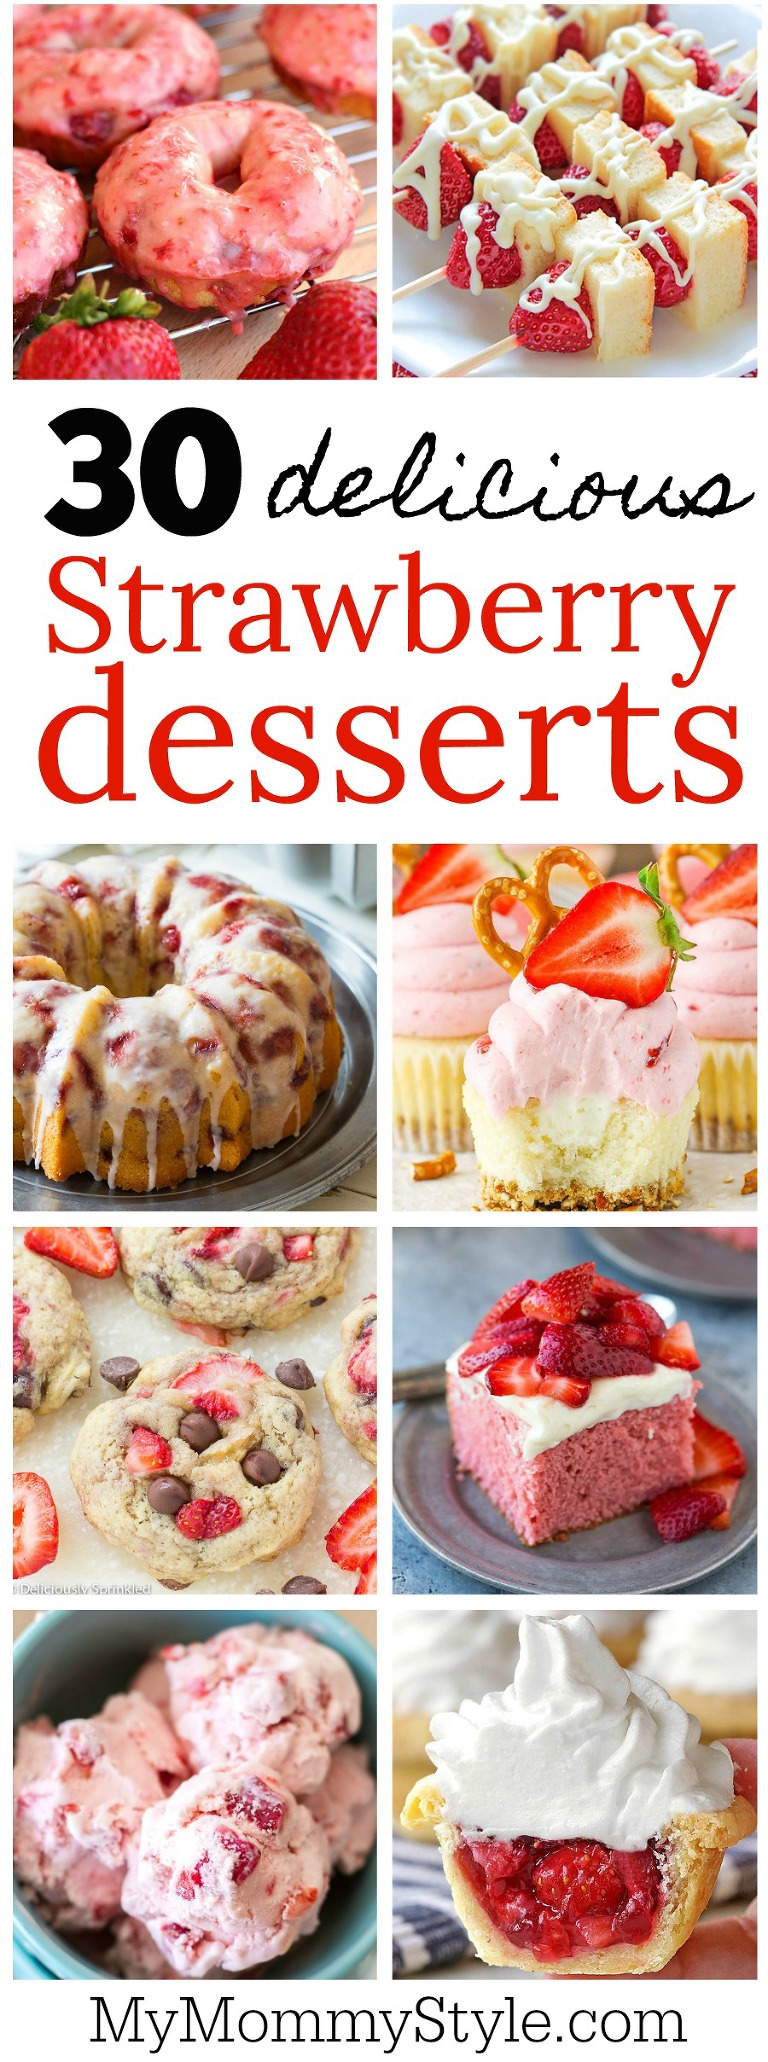 30 delicious strawberry desserts